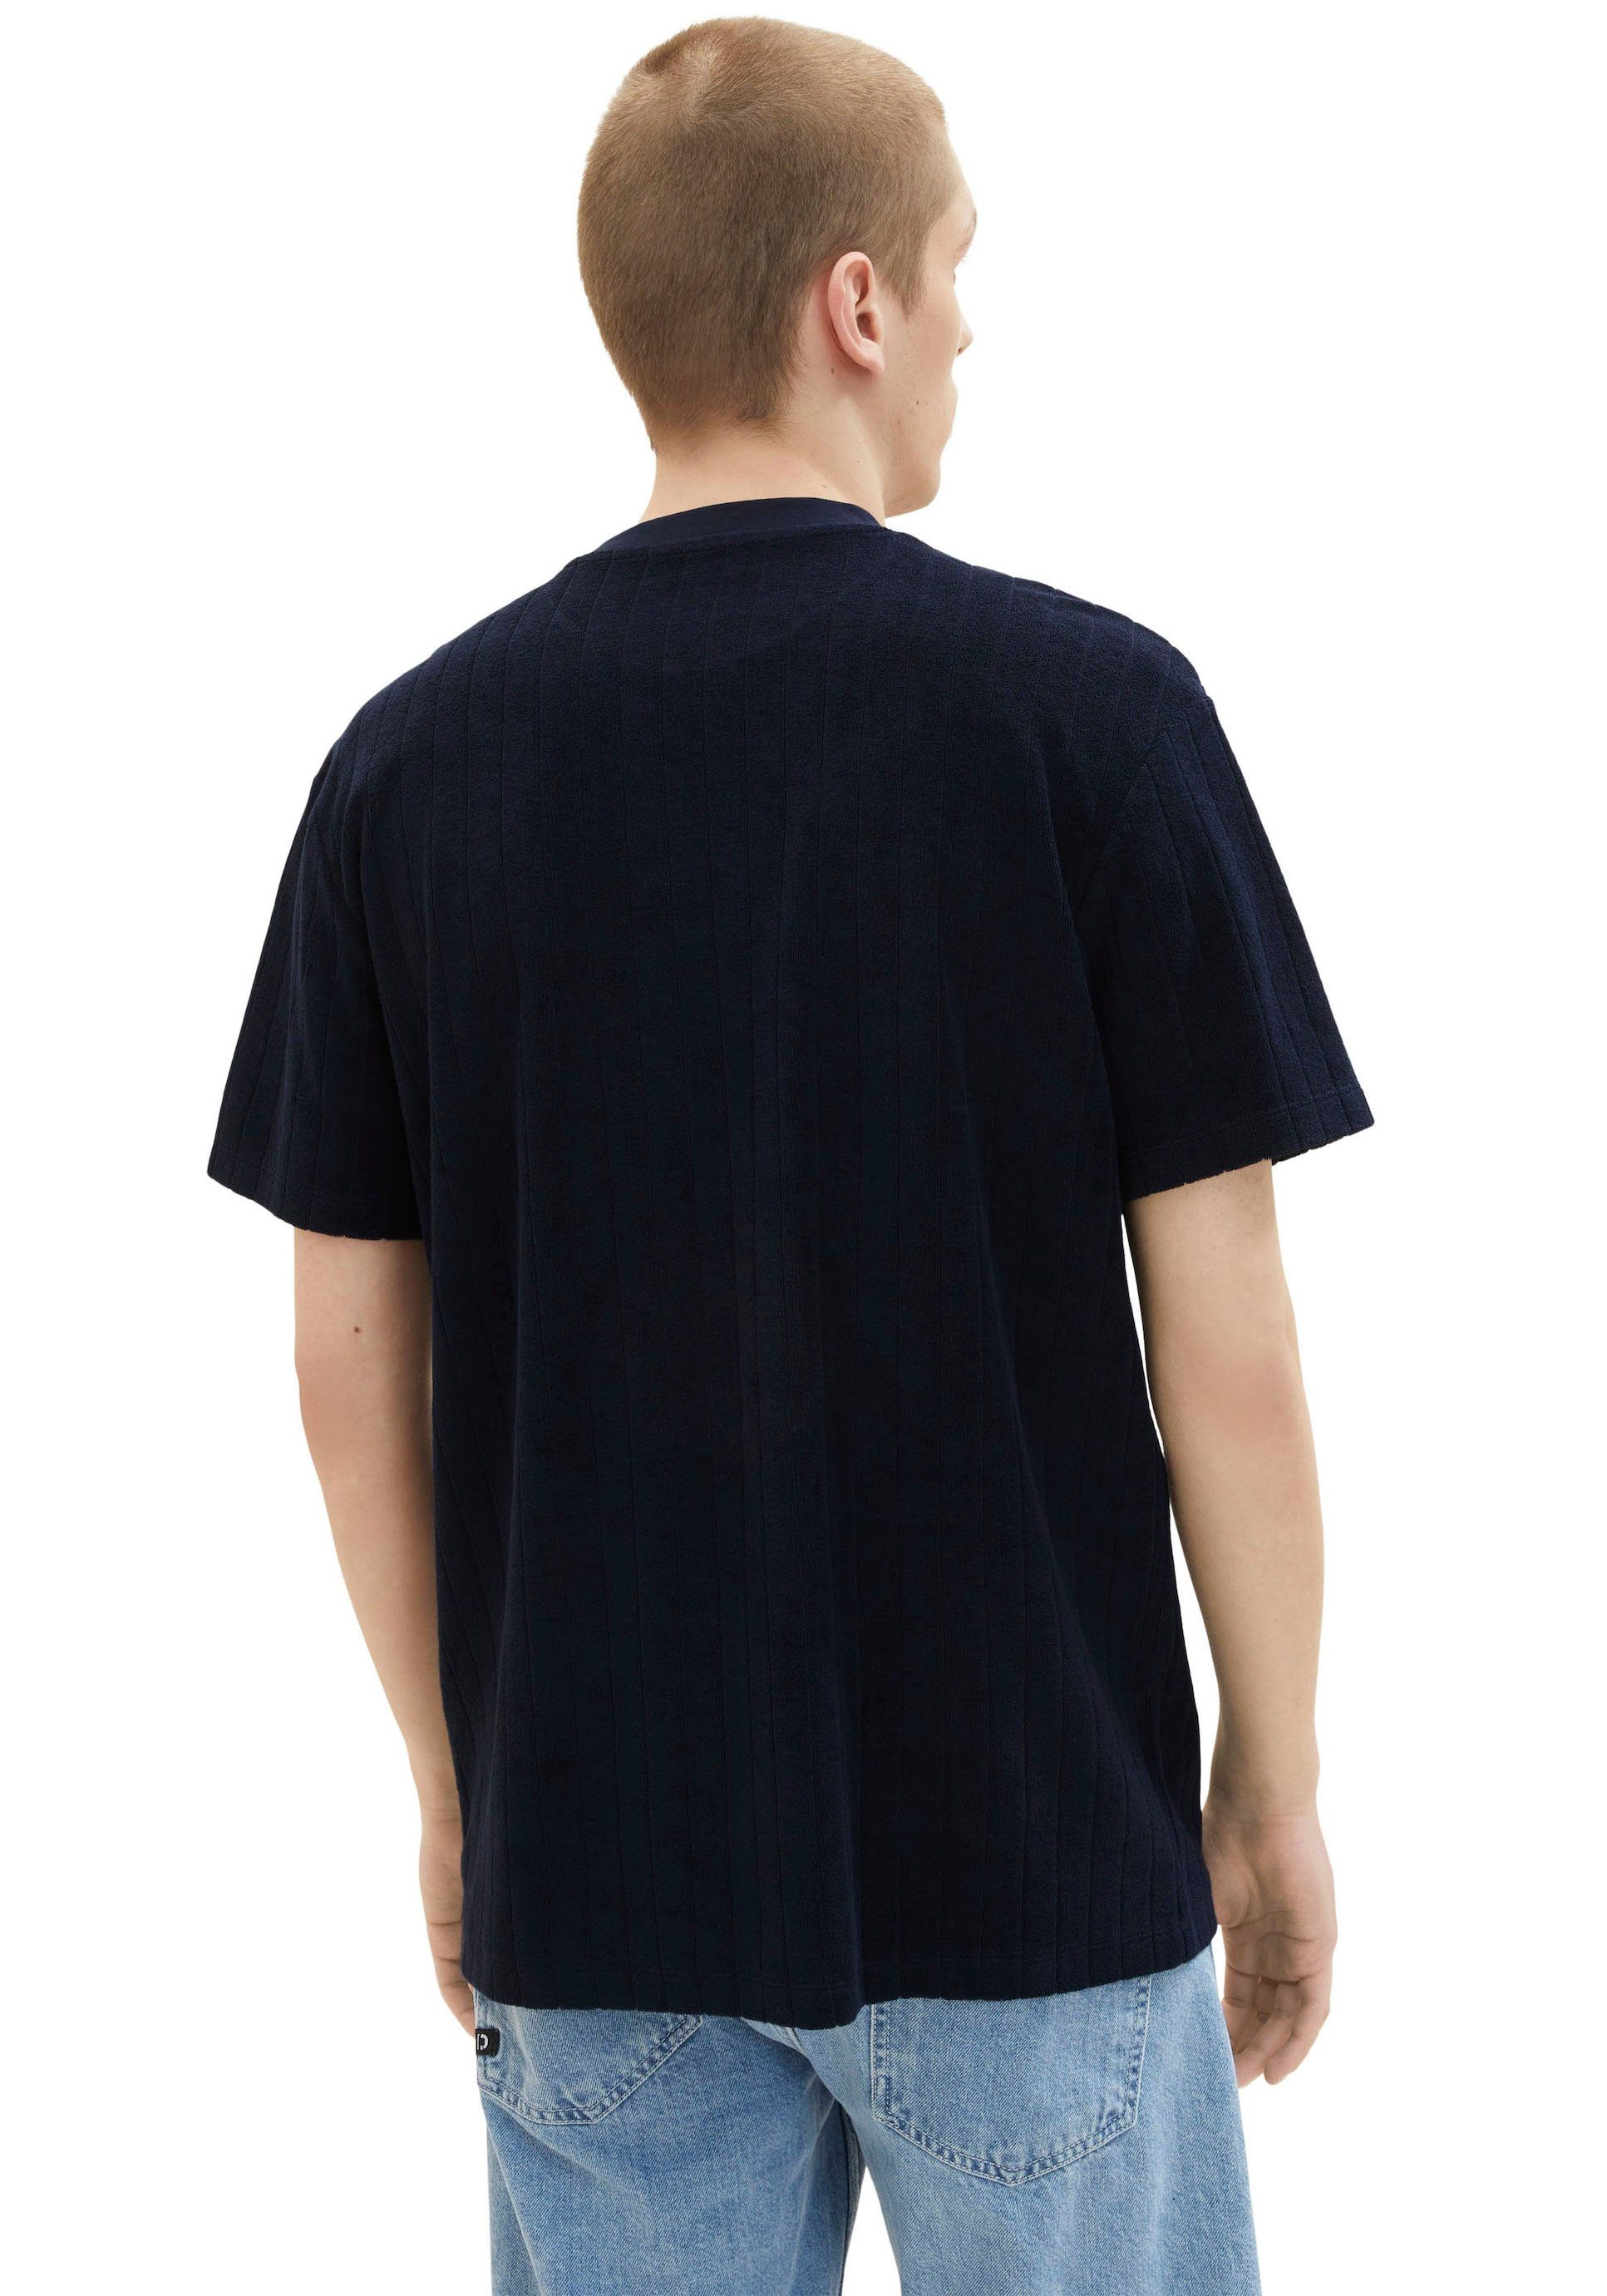 Sweatware gemustert TAILOR navy strukturierter T-Shirt TOM Denim aus